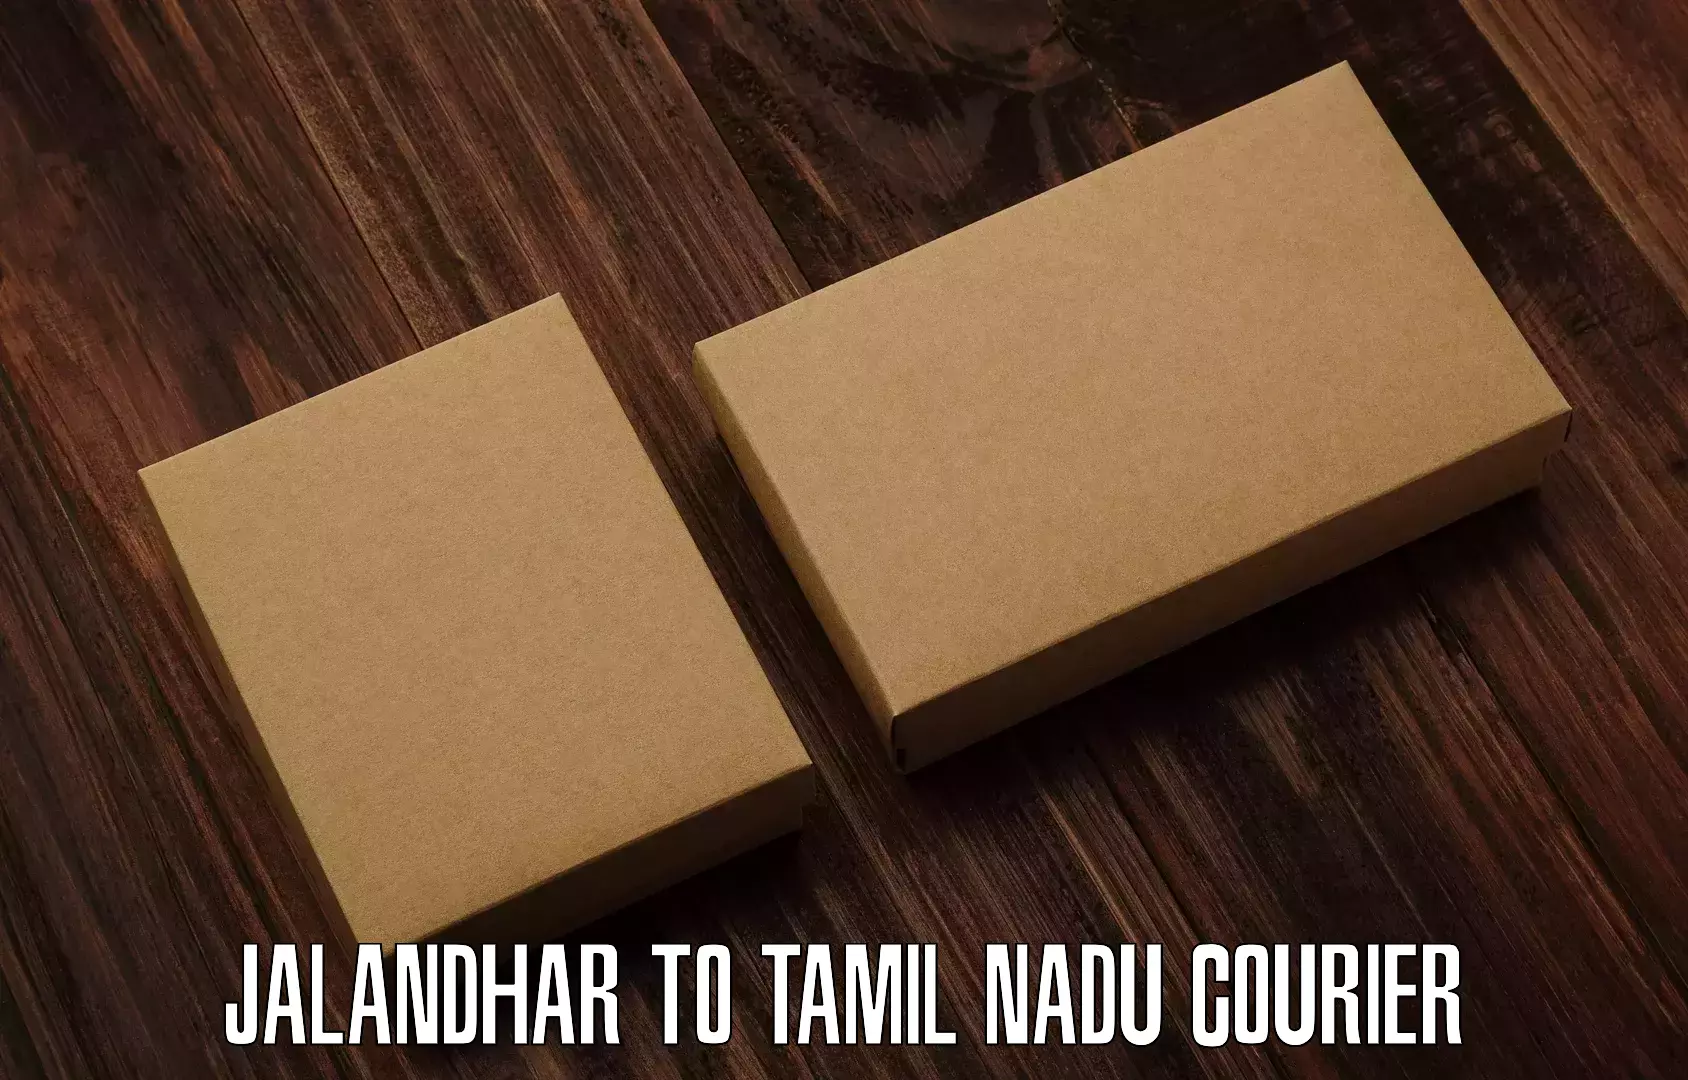 24-hour courier service Jalandhar to Maharajapuram